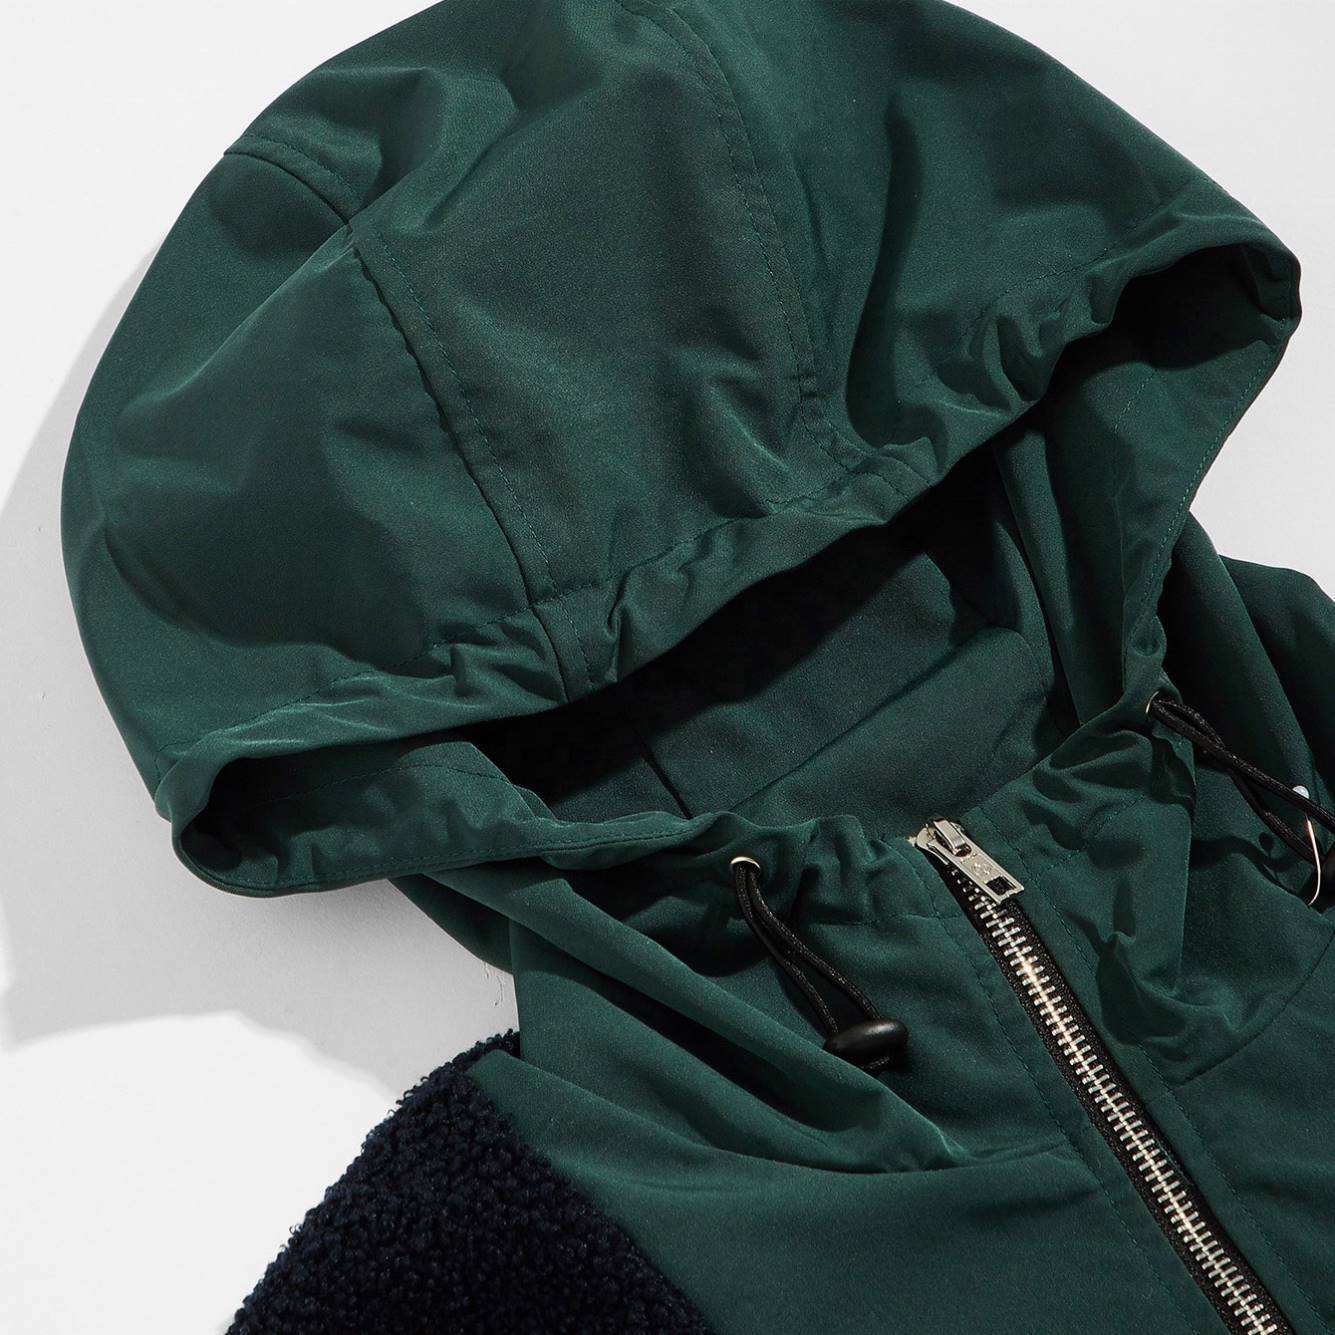 OEM Manufacturer Custom Men's Clothing Fleece Cotton Half Zipper Patchwork Hoodies Pullover Sweatshirt With Big Cargo Pockets